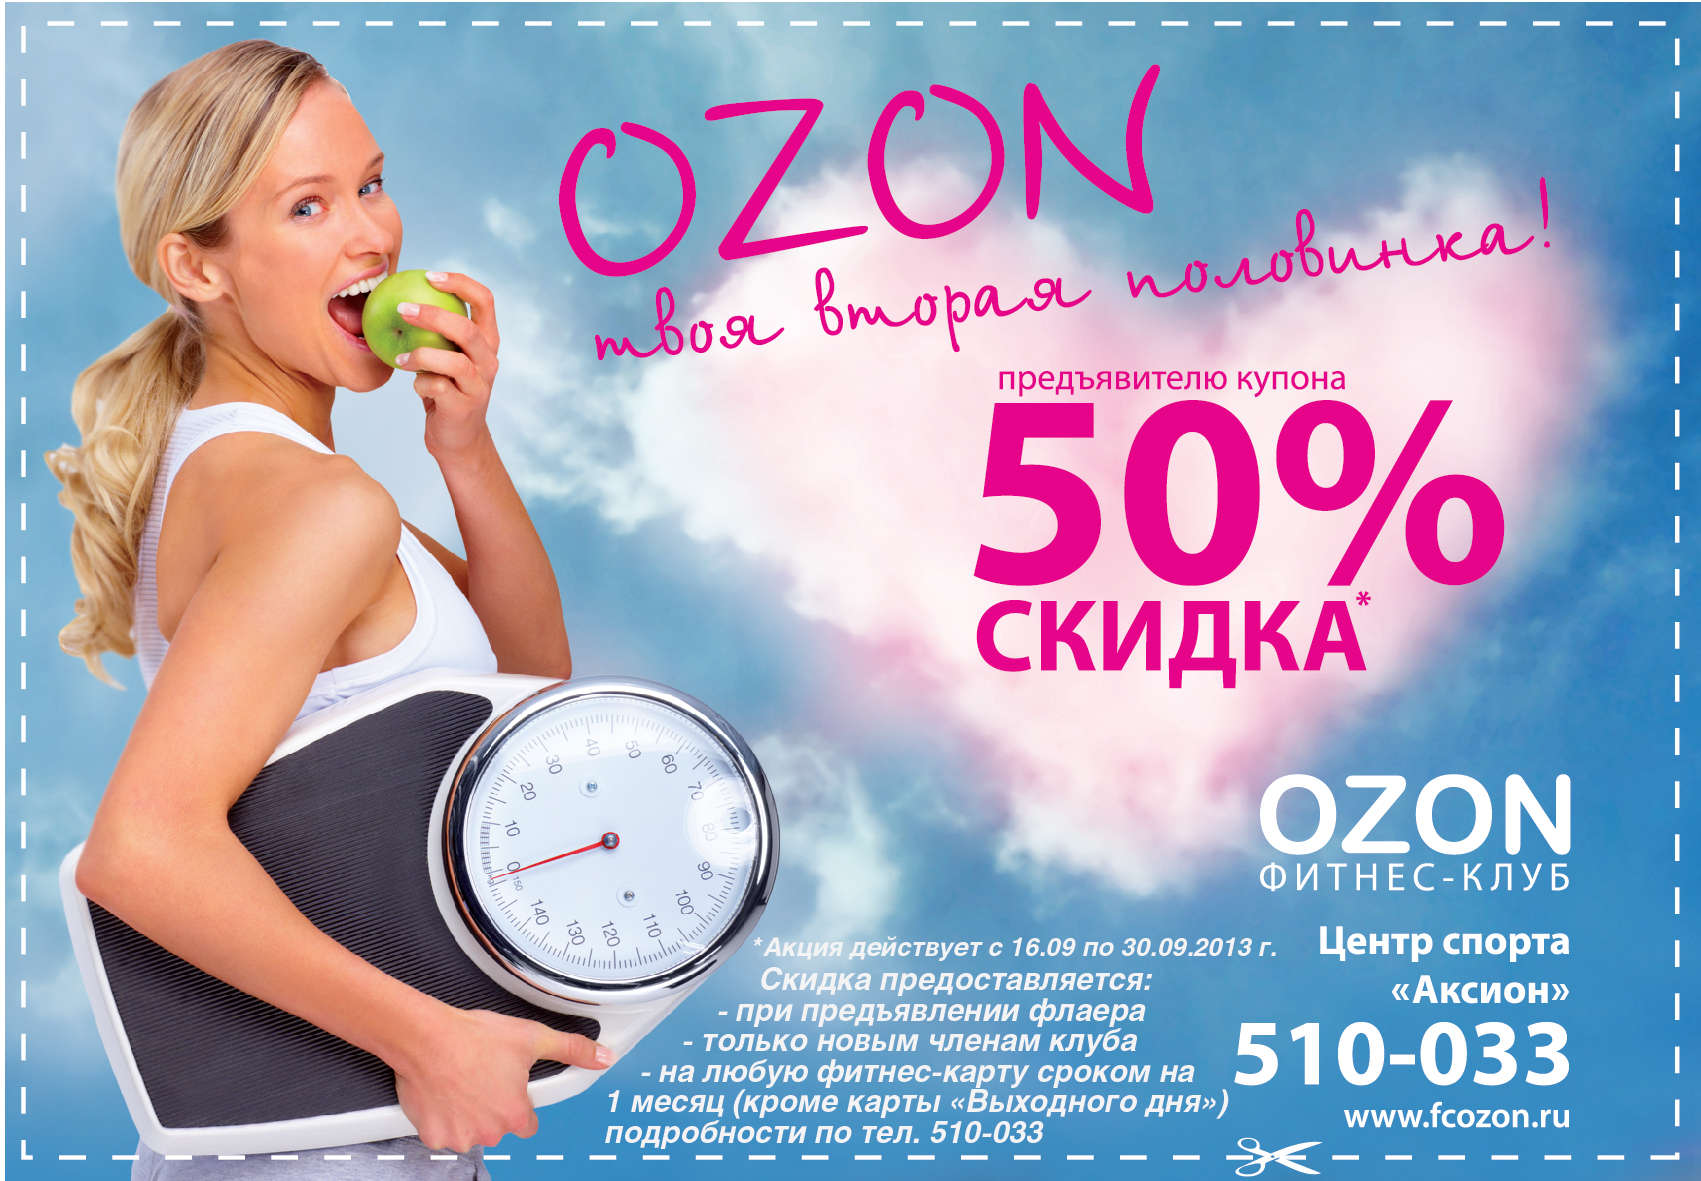 Акции в сети магазинов. OZON реклама. OZON скидки. Скидки. Баннер для акции Озон.